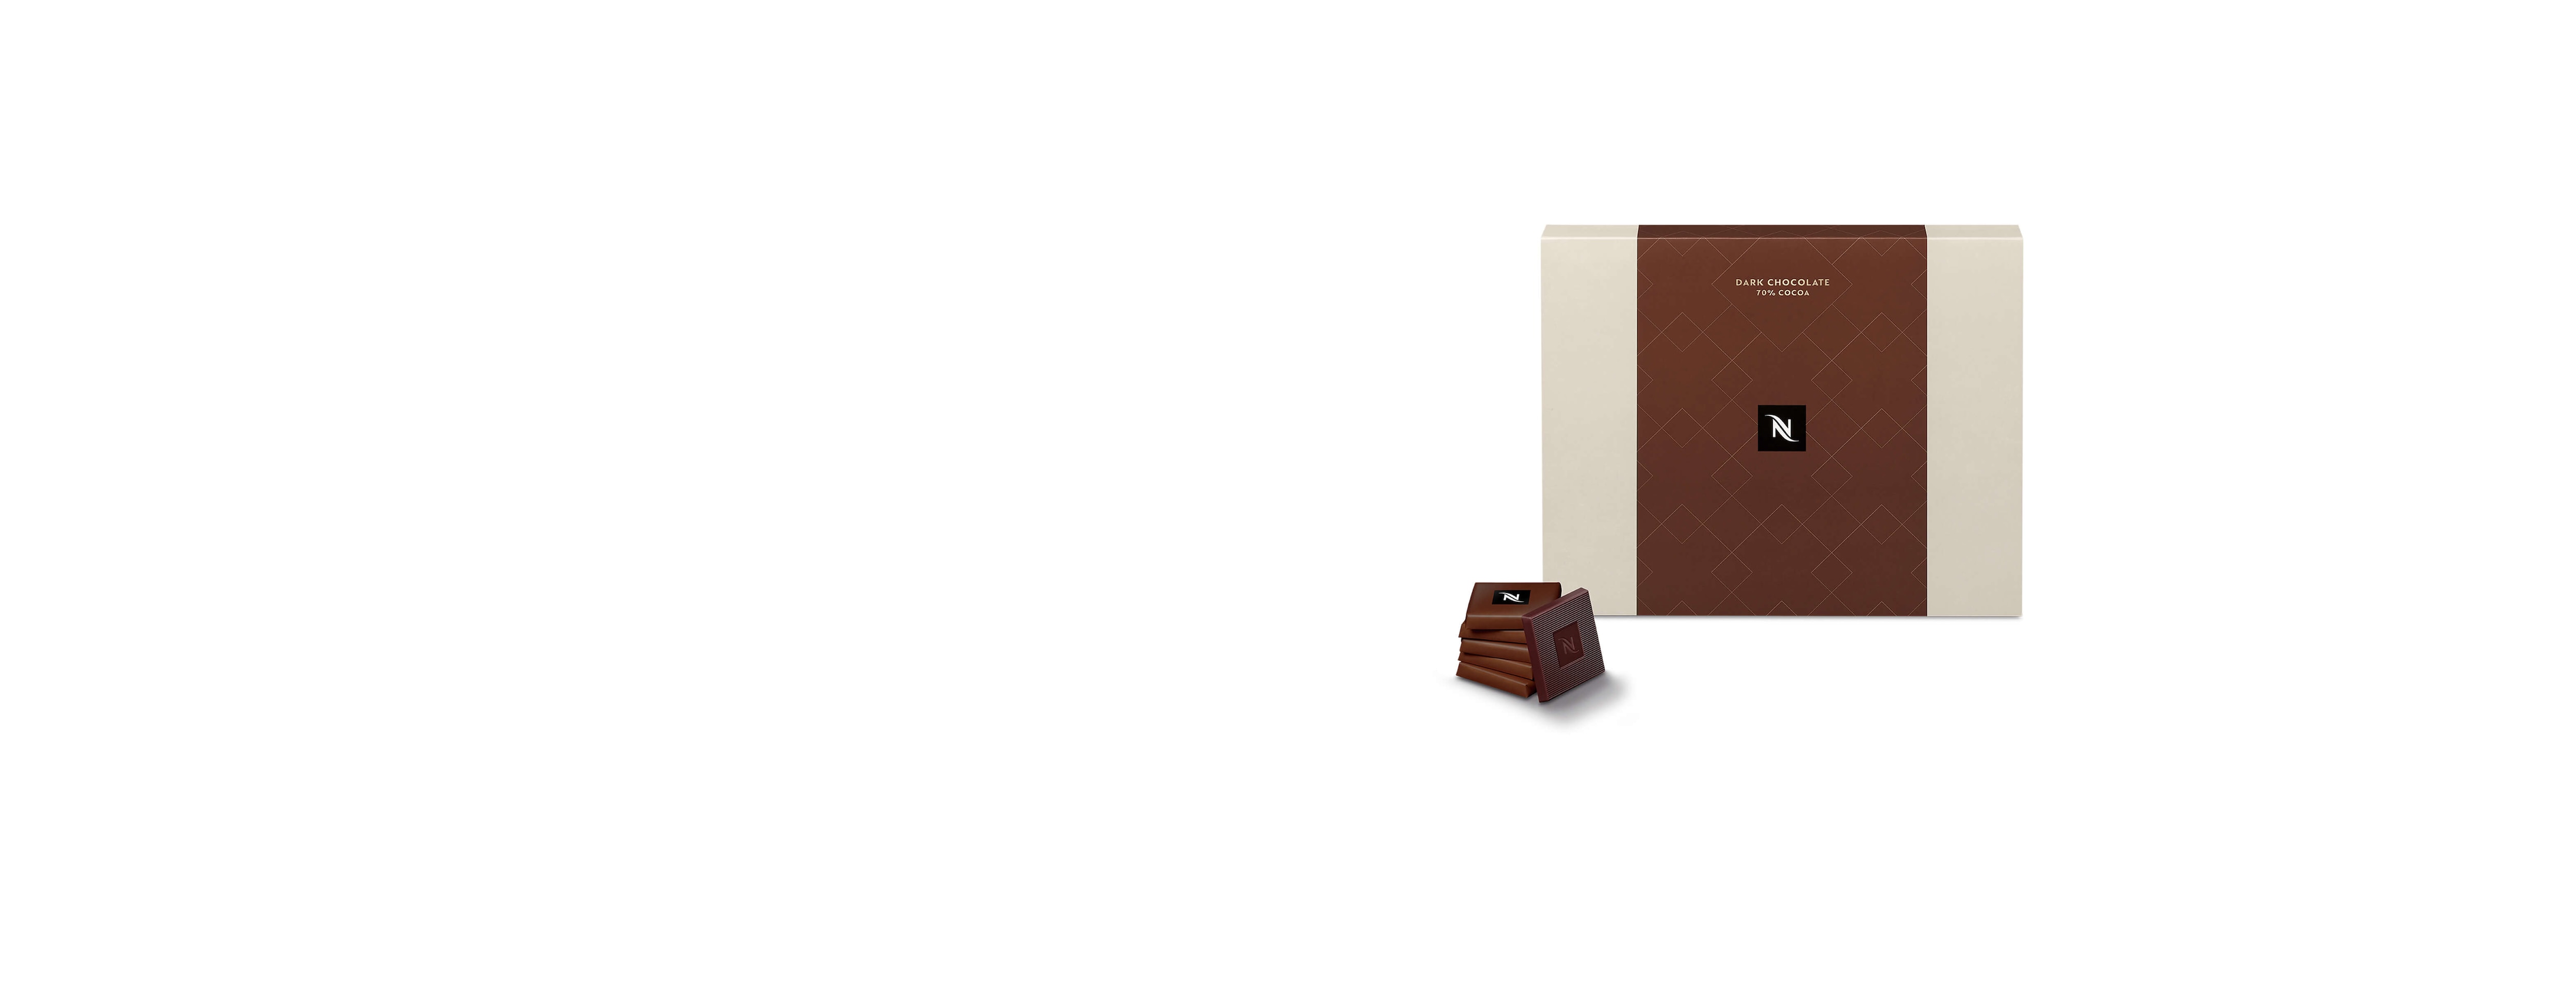 Dark Chocolate Squares - 70% cocoa